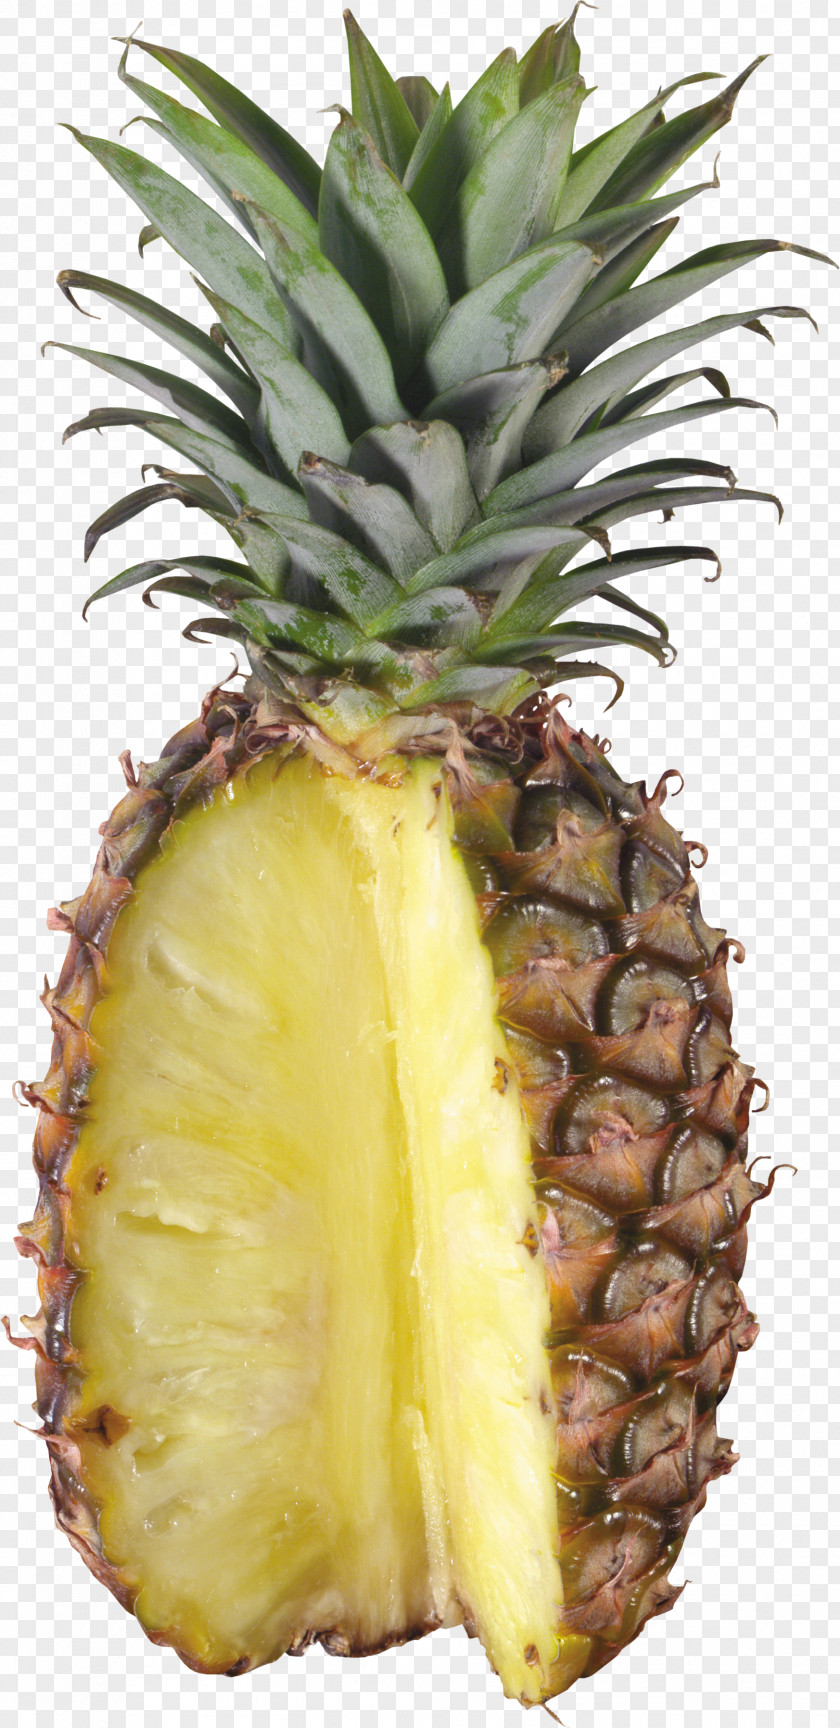 Pineapple Image, Free Download Juice Orange Fruit PNG